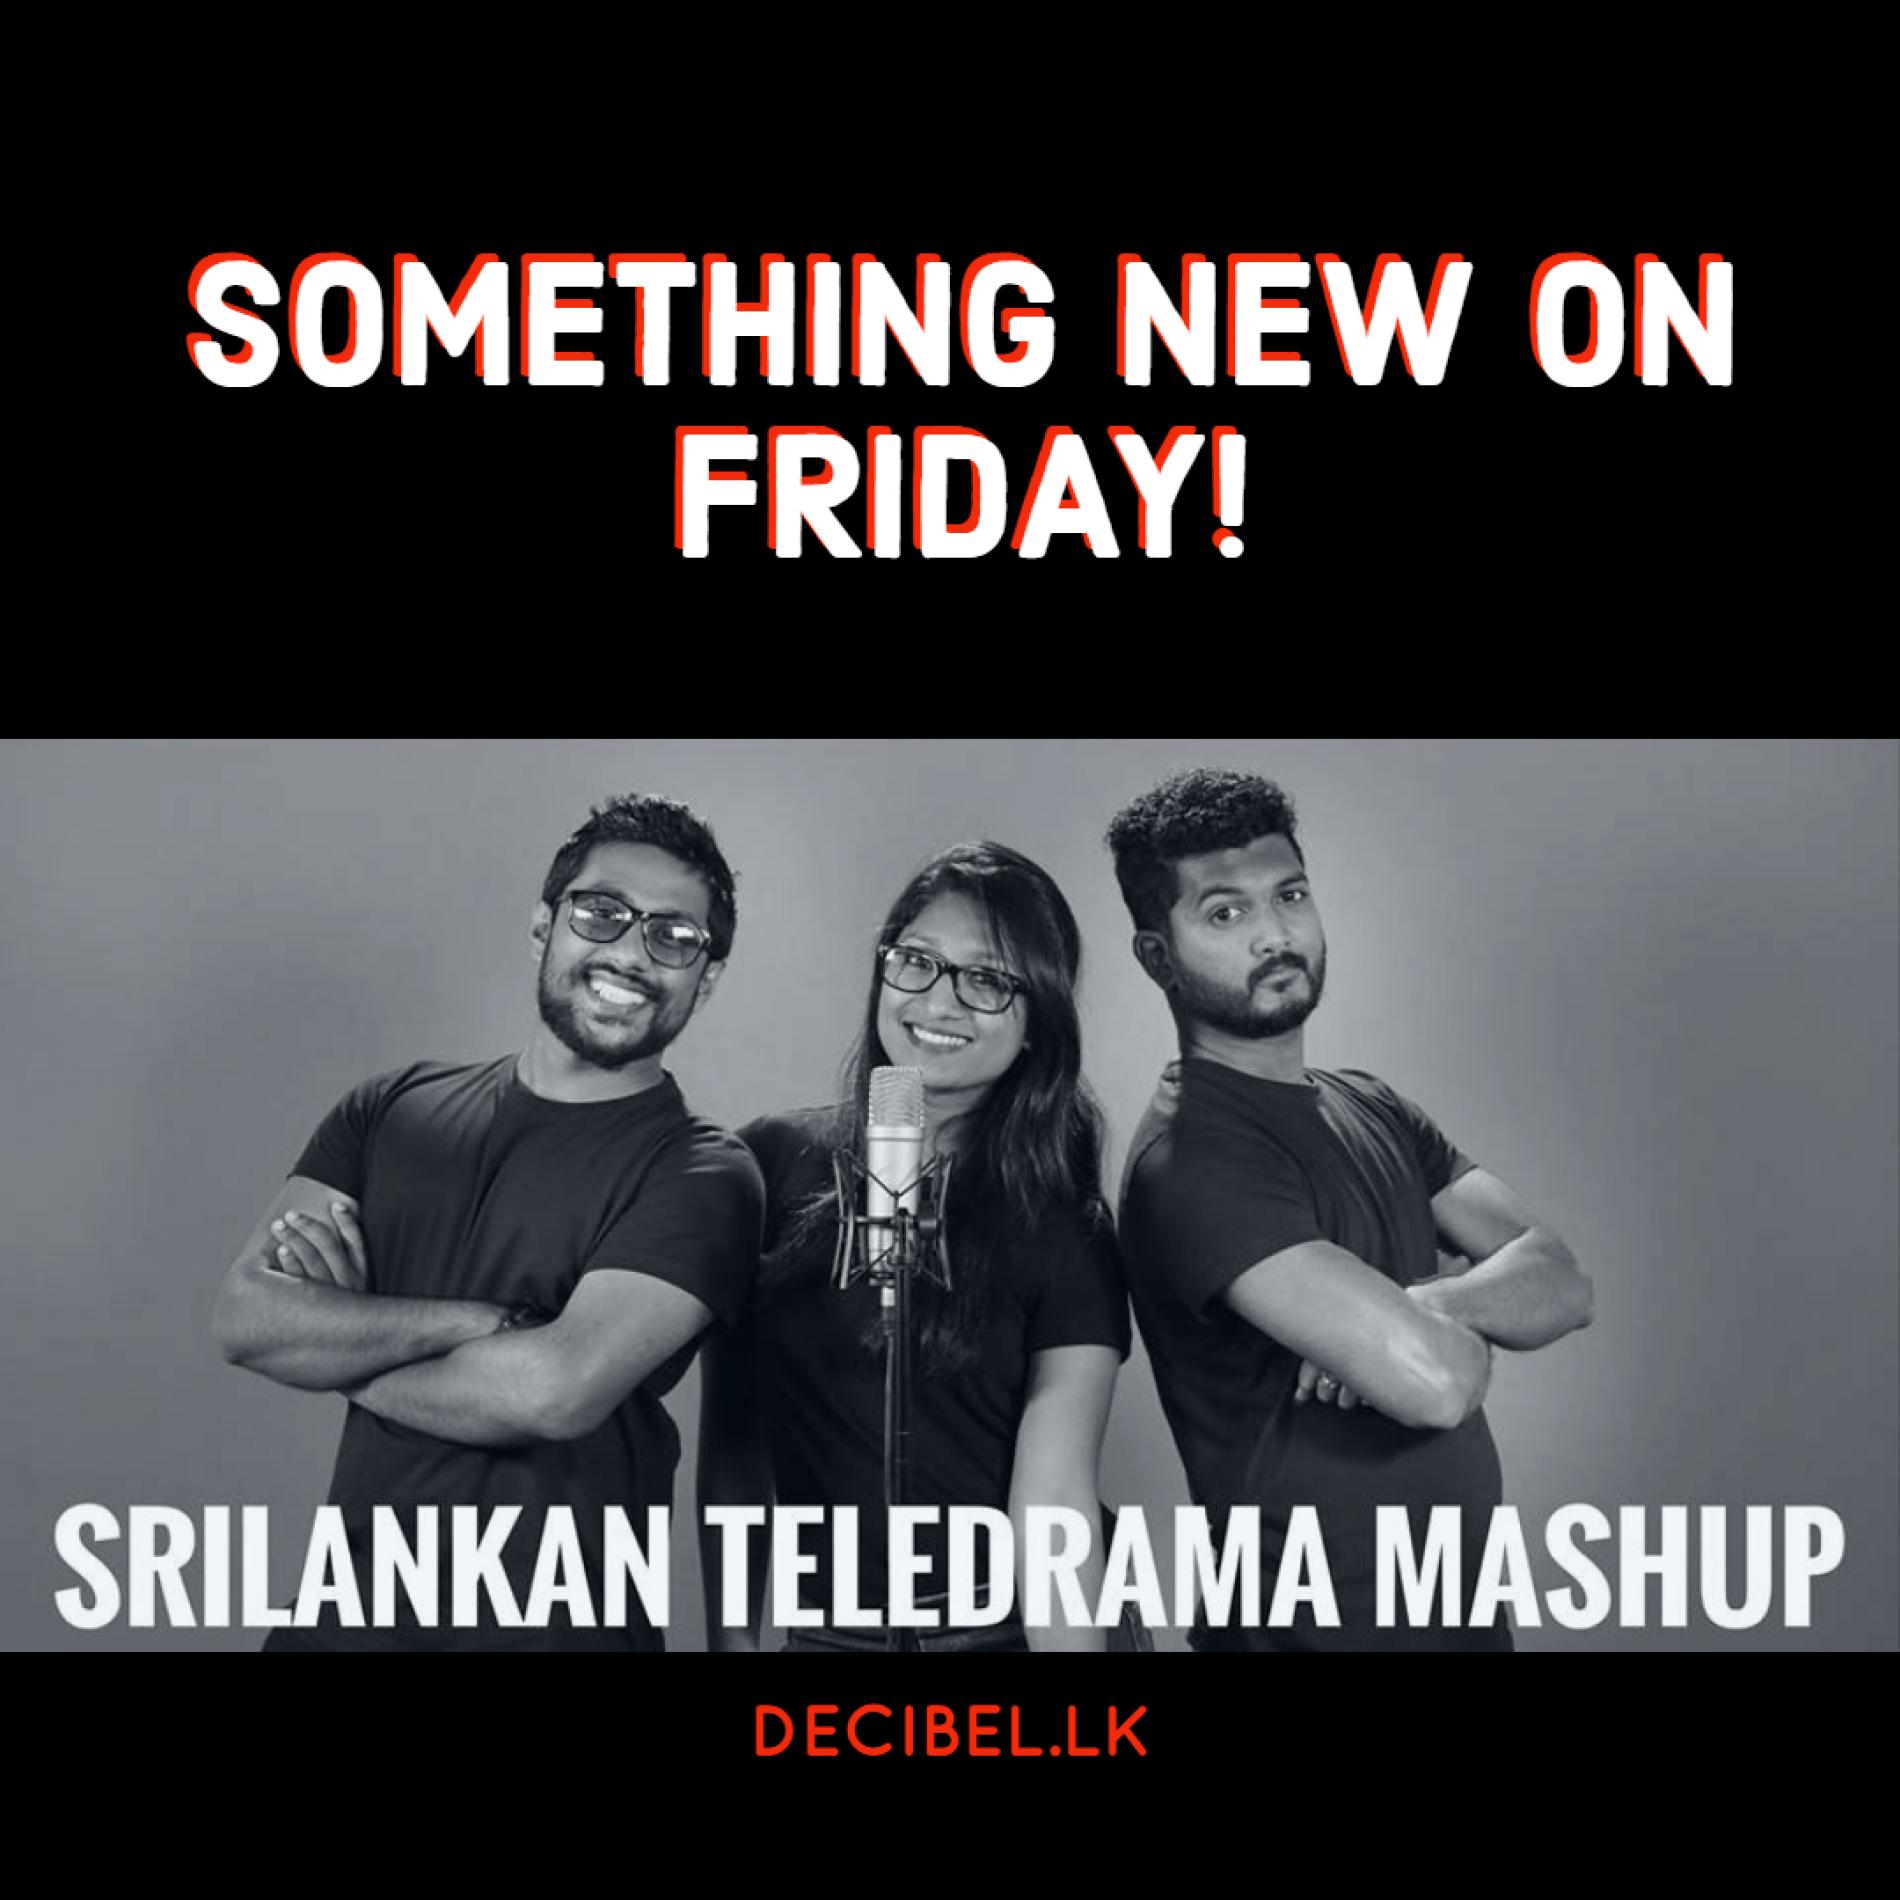 Balanawanm Balapan To Release Something New This Friday!